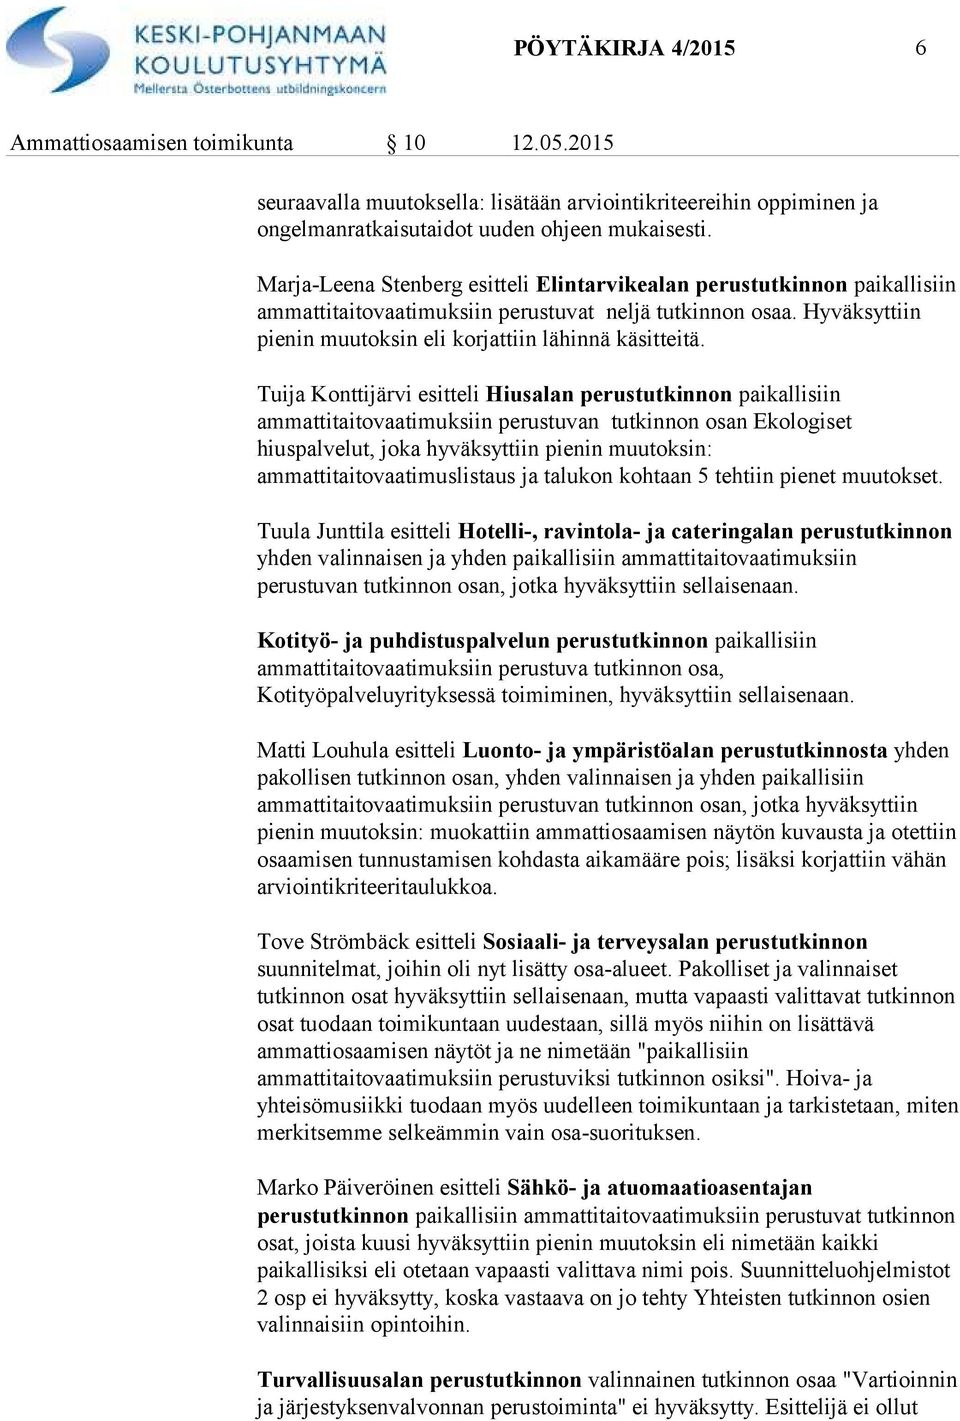 Tuija Konttijärvi esitteli Hiusalan perustutkinnon paikallisiin ammattitaitovaatimuksiin perustuvan tutkinnon osan Ekologiset hiuspalvelut, joka hyväksyttiin pienin muutoksin: